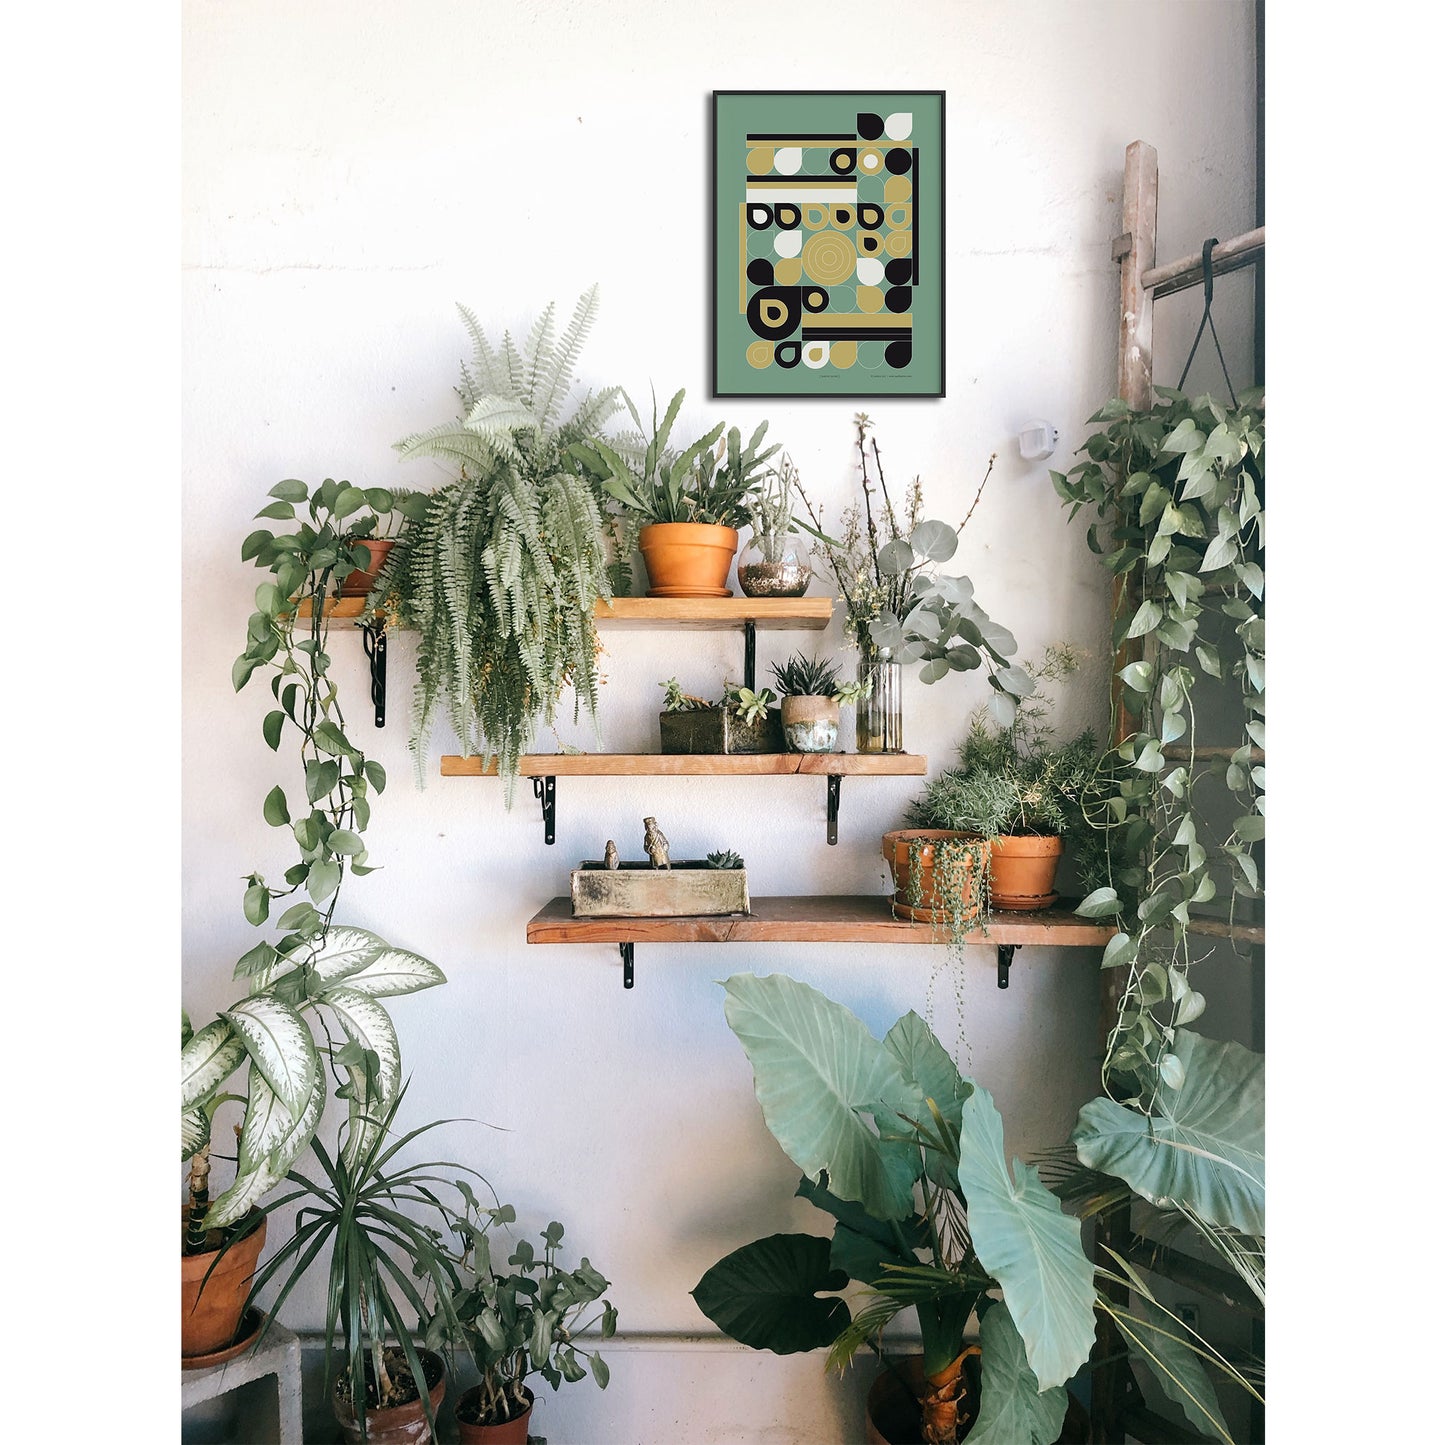 Productafbeelding poster "jardin jaune" impressie foto ingelijst, hangend aan een wand in een interieur met veel planten